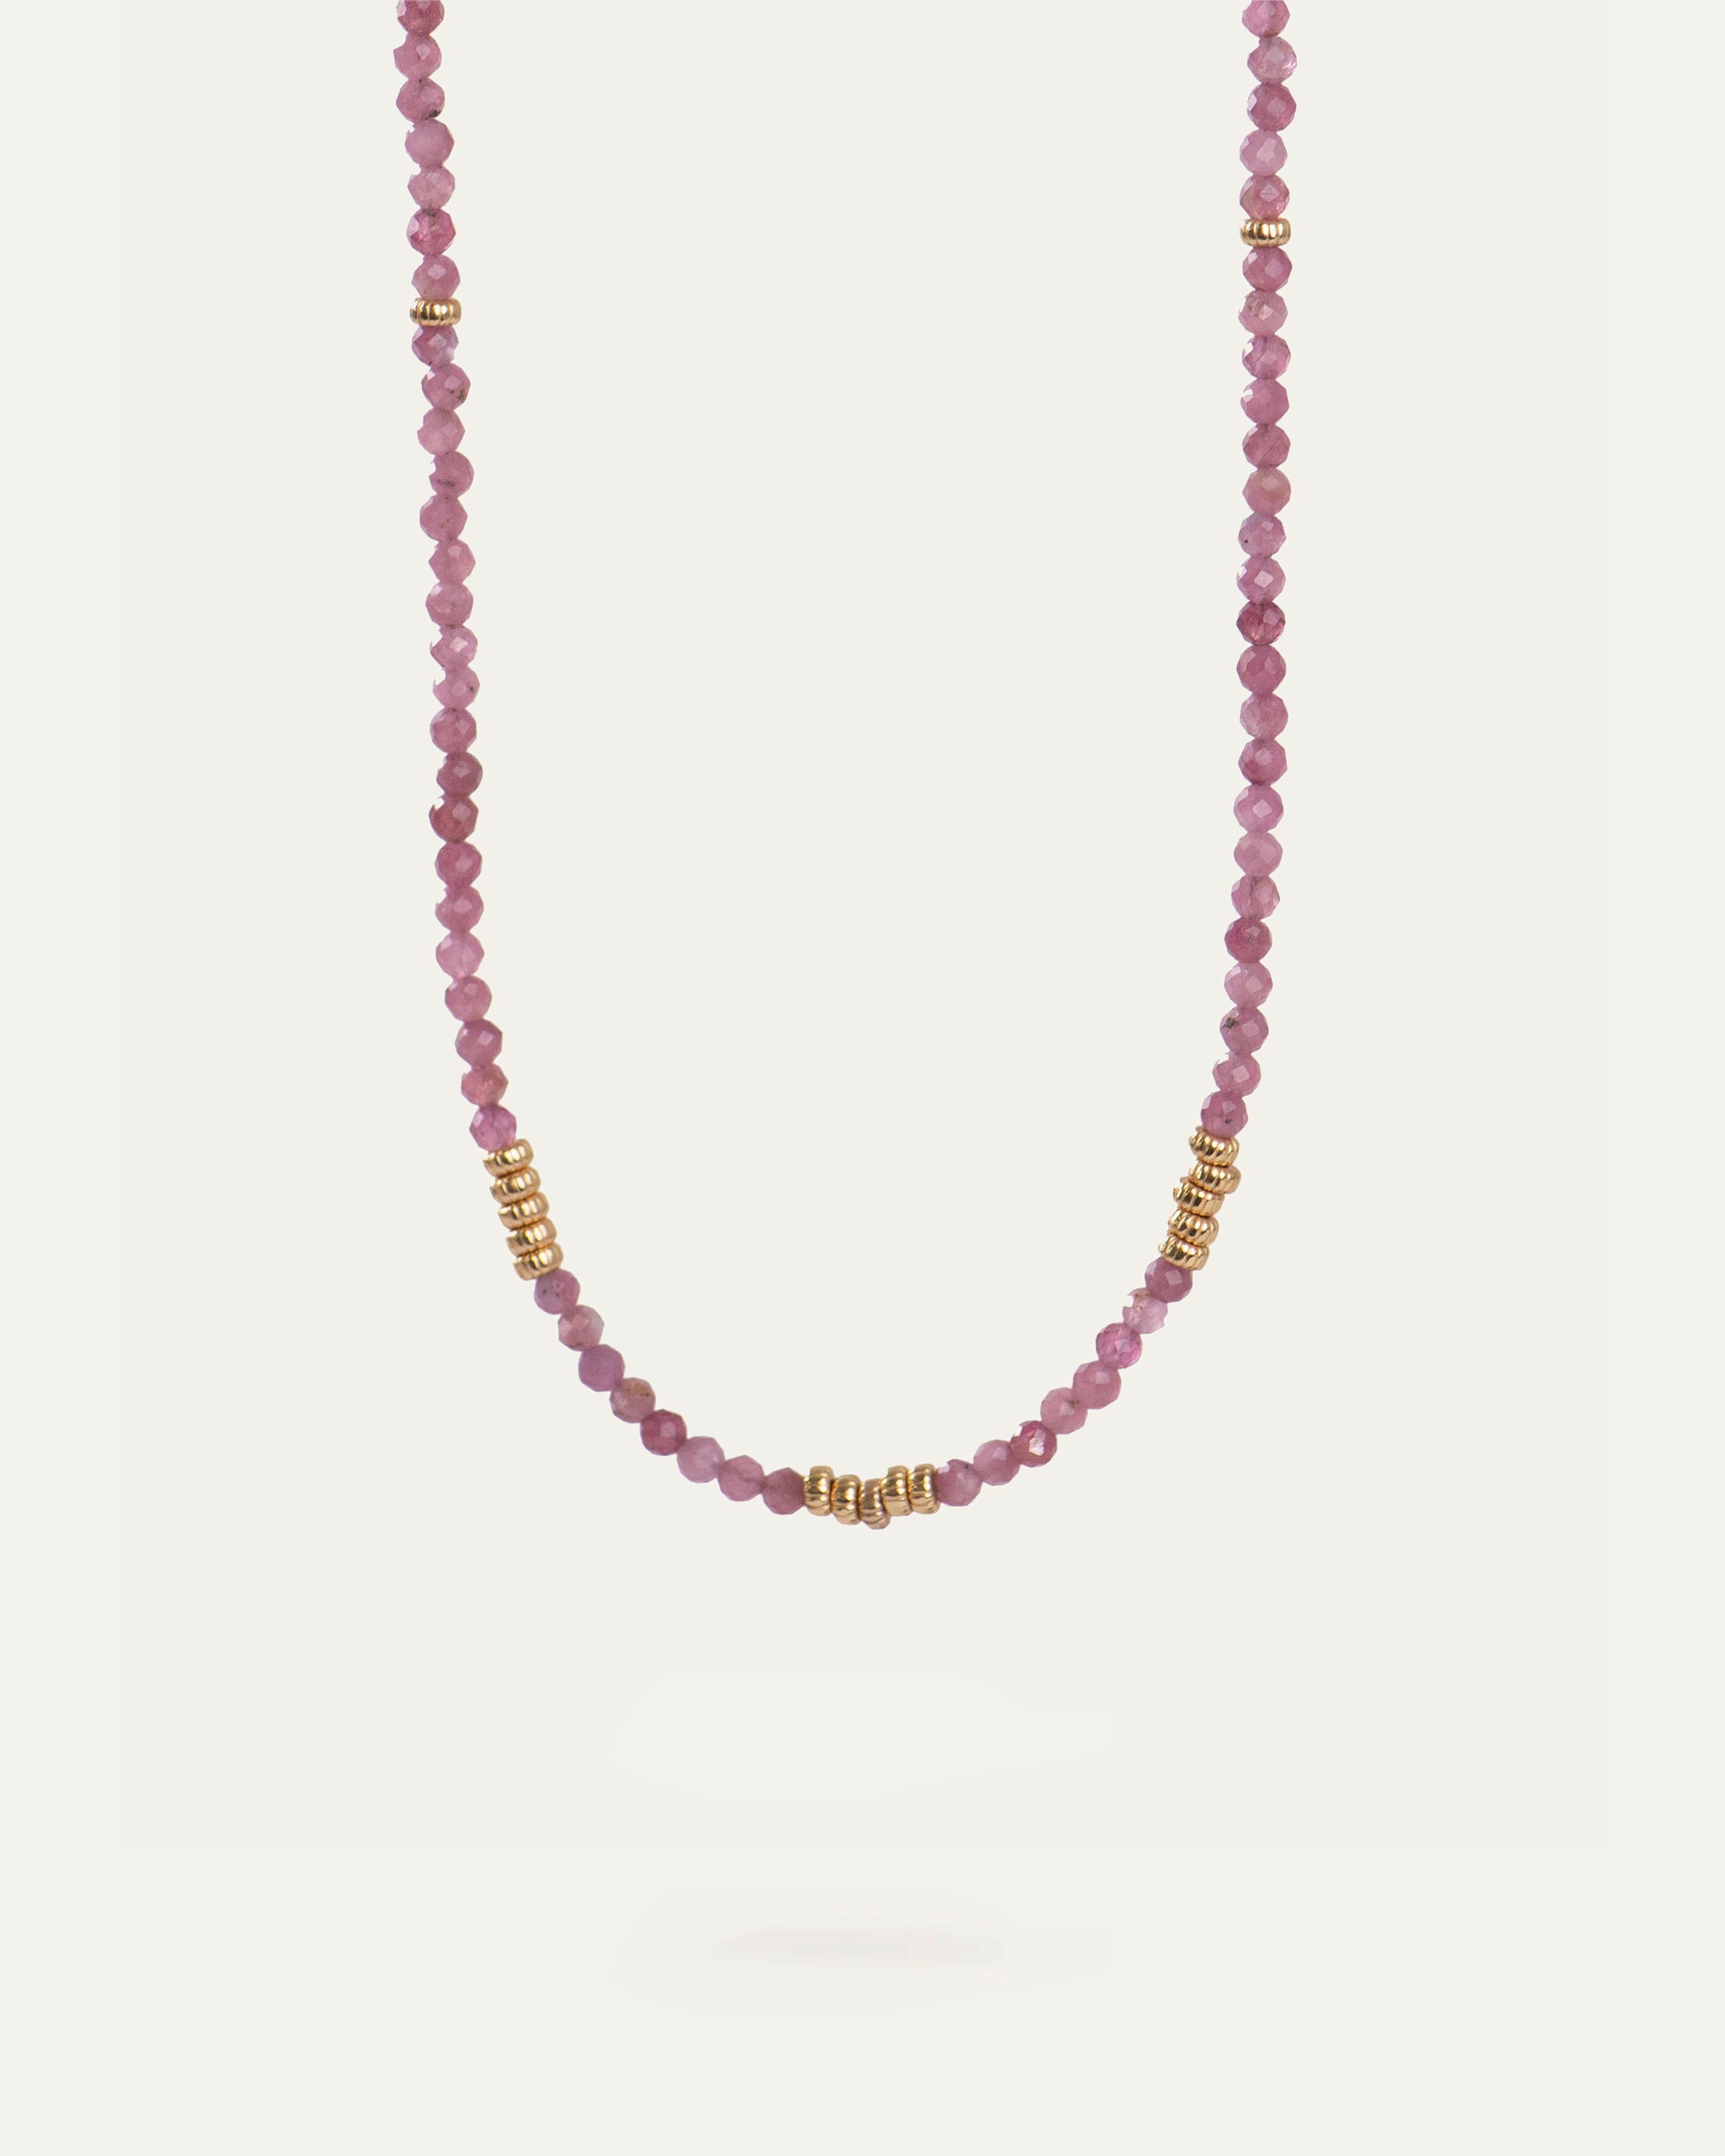 Collier ras de cou composé de tourmalines roses et de petites perles dorées striées en plaqué or 18 carats.